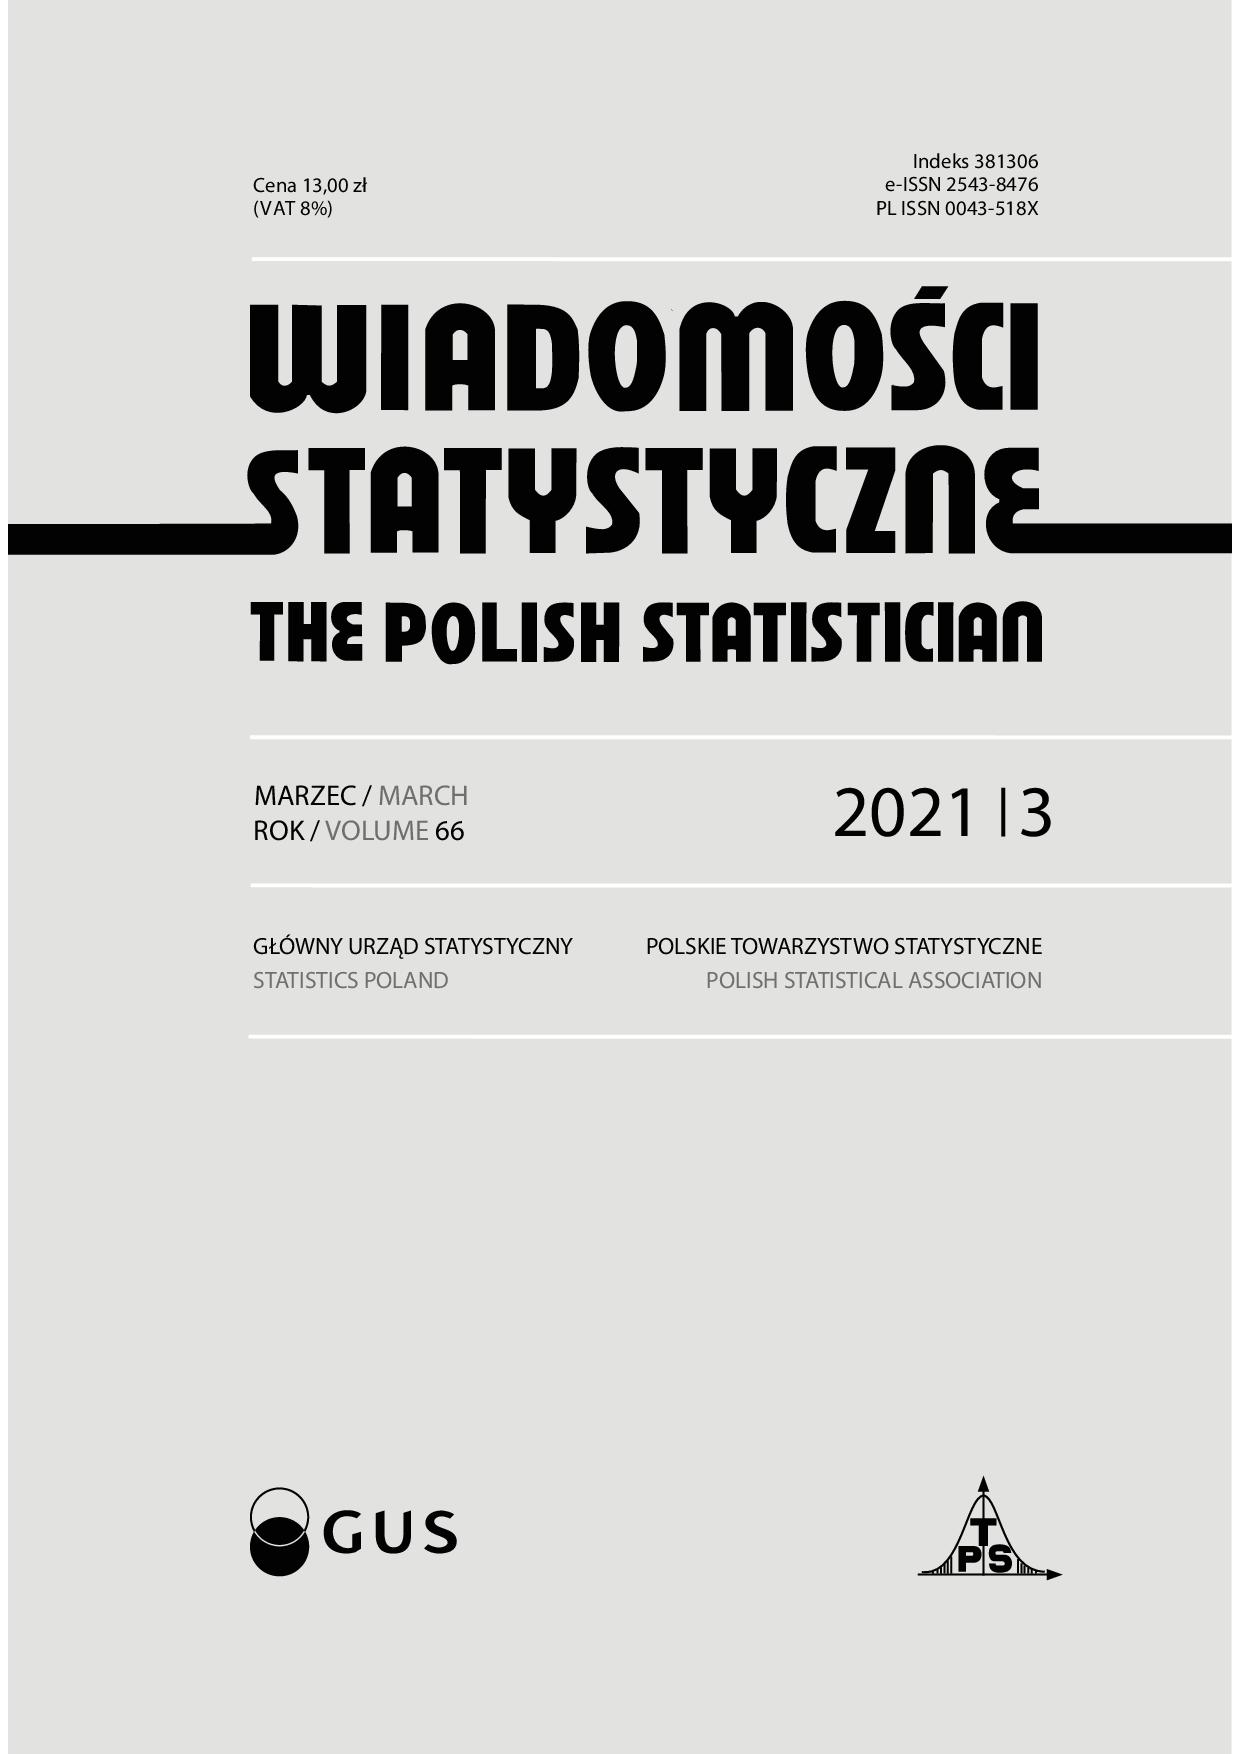 Wspomnienie o Władysławie Wiesławie Łagodzińskim